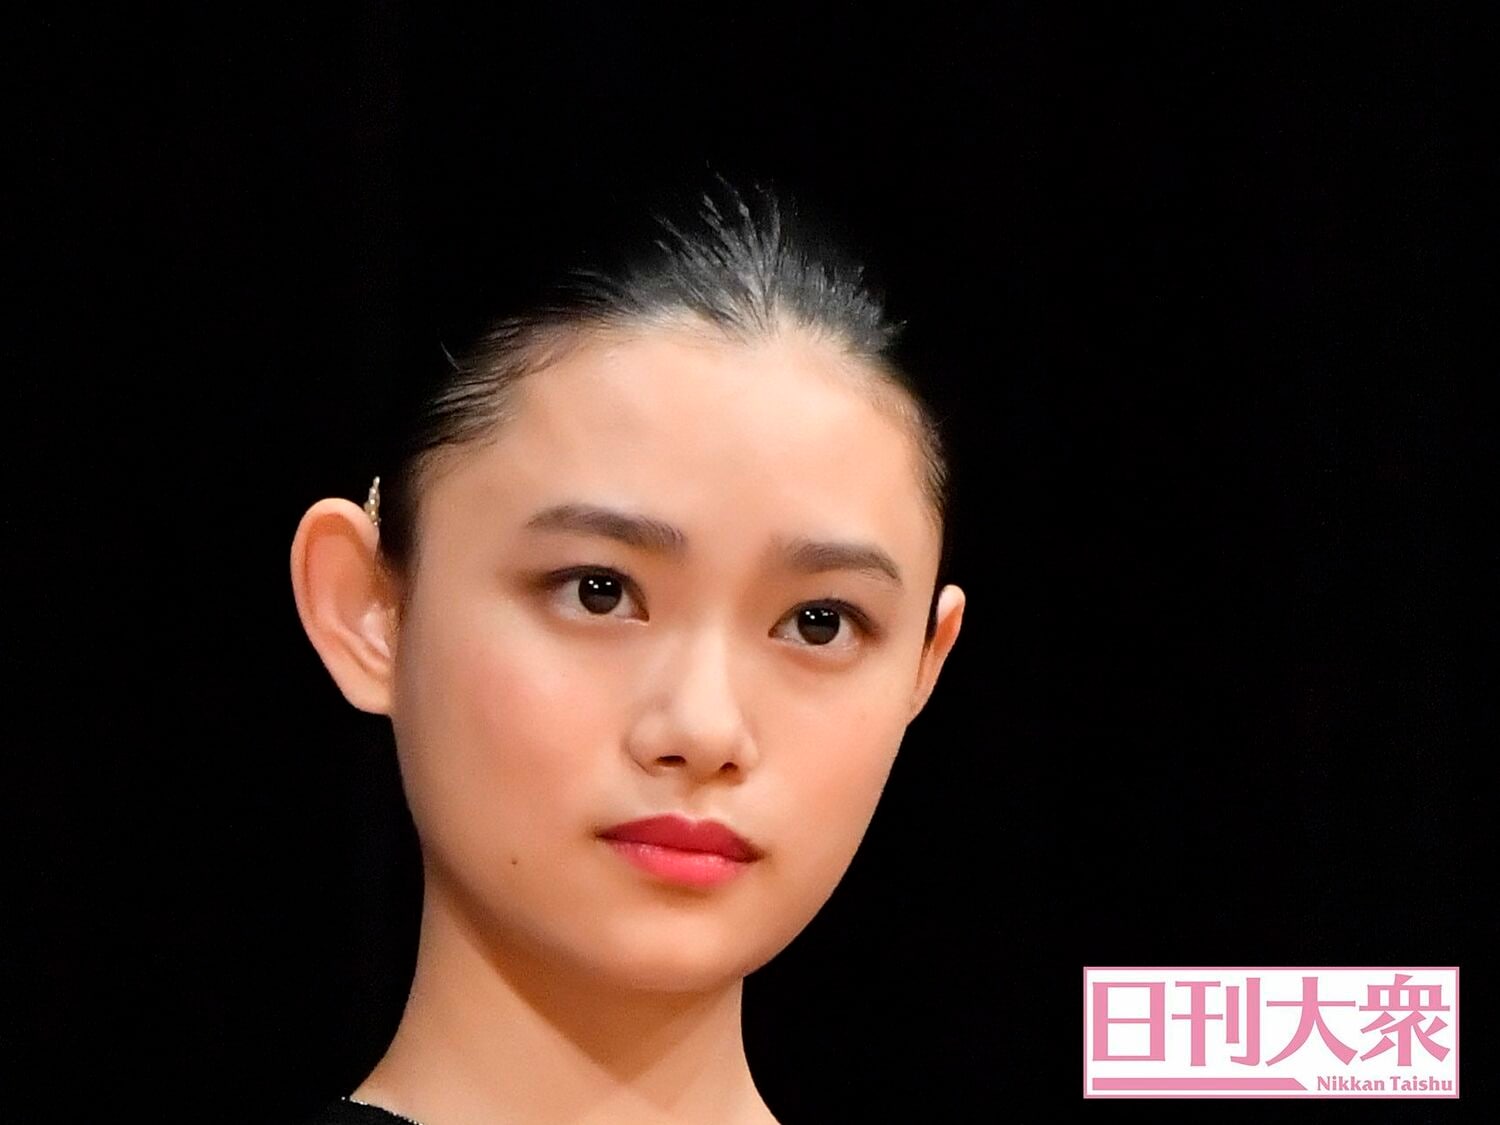 NHK朝ドラ『おちょやん』童顔女優・杉咲花の「3つの潜在的魅力」の画像